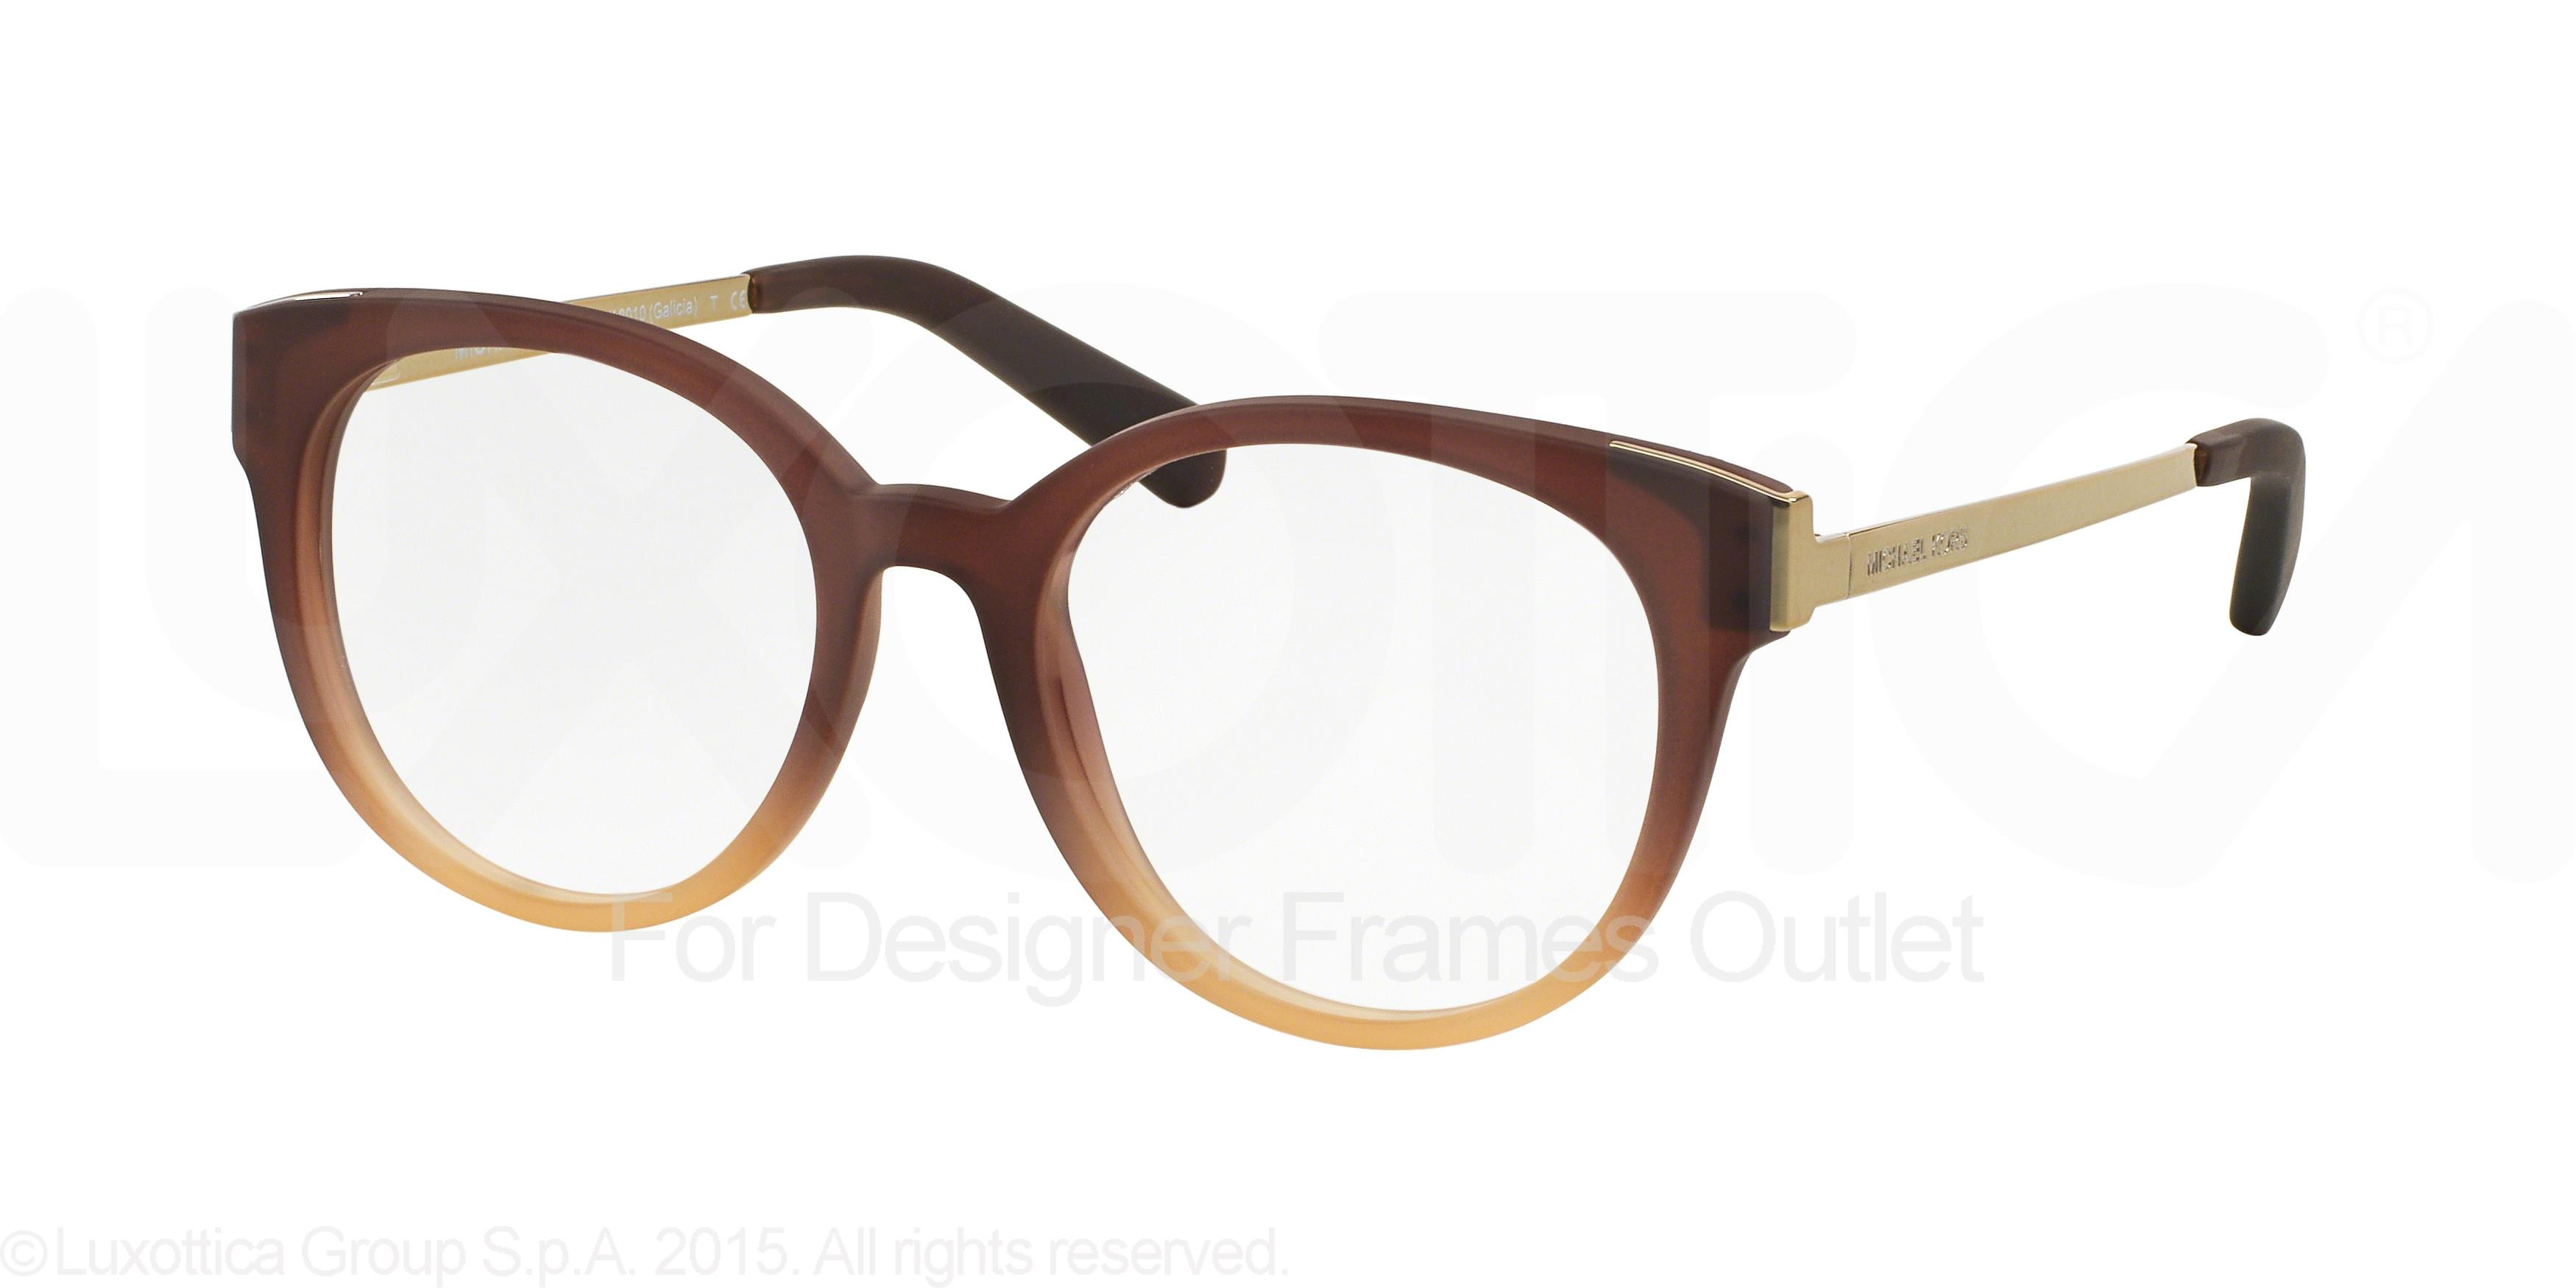 Designer Frames Outlet. Michael Kors Eyeglasses MK8010